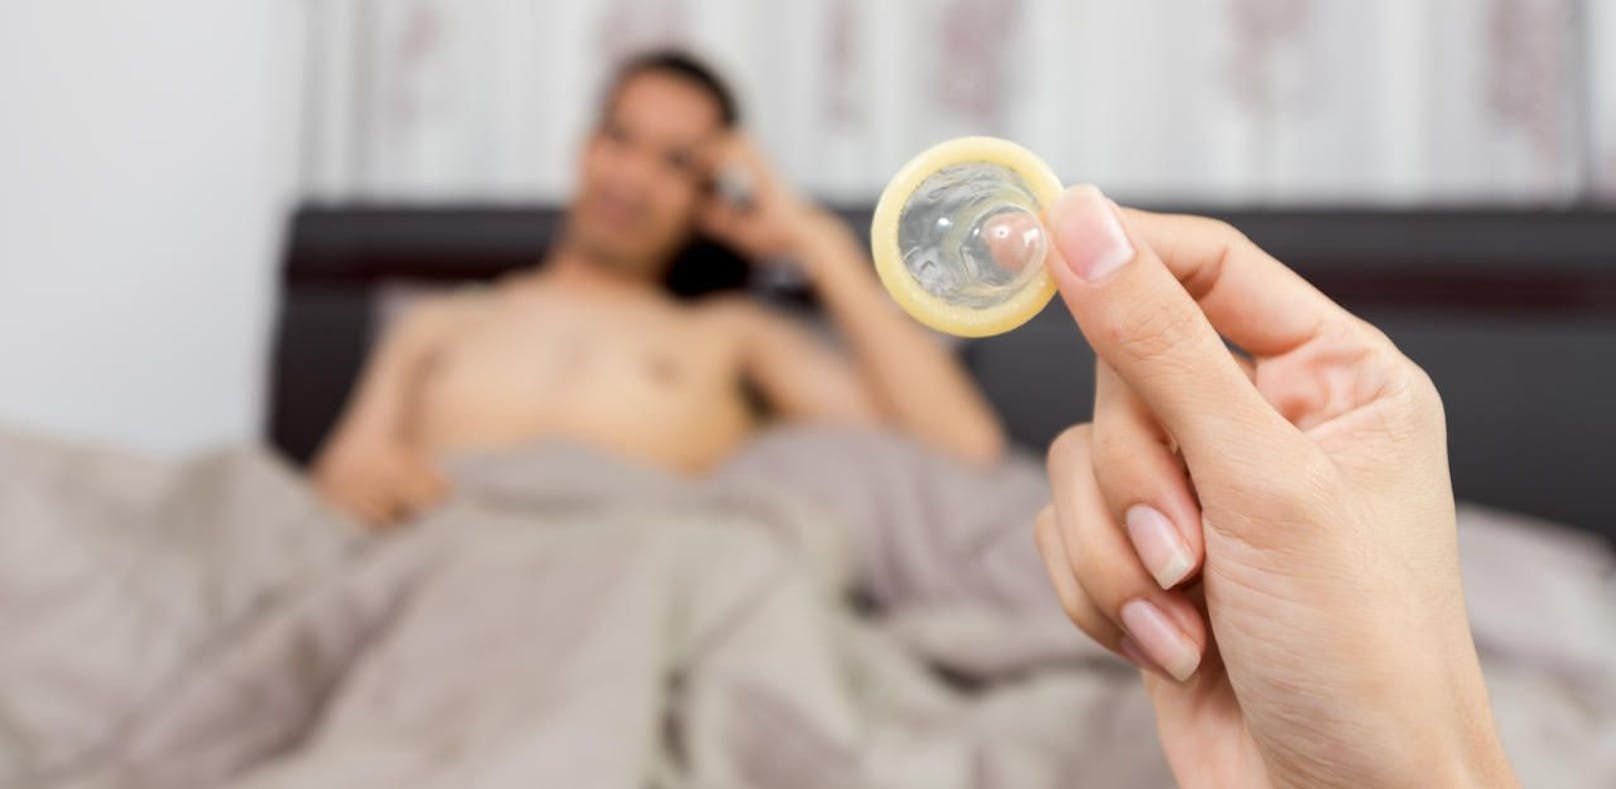 Mann entfernte Kondom: Erstes "Stealthing"-Urteil